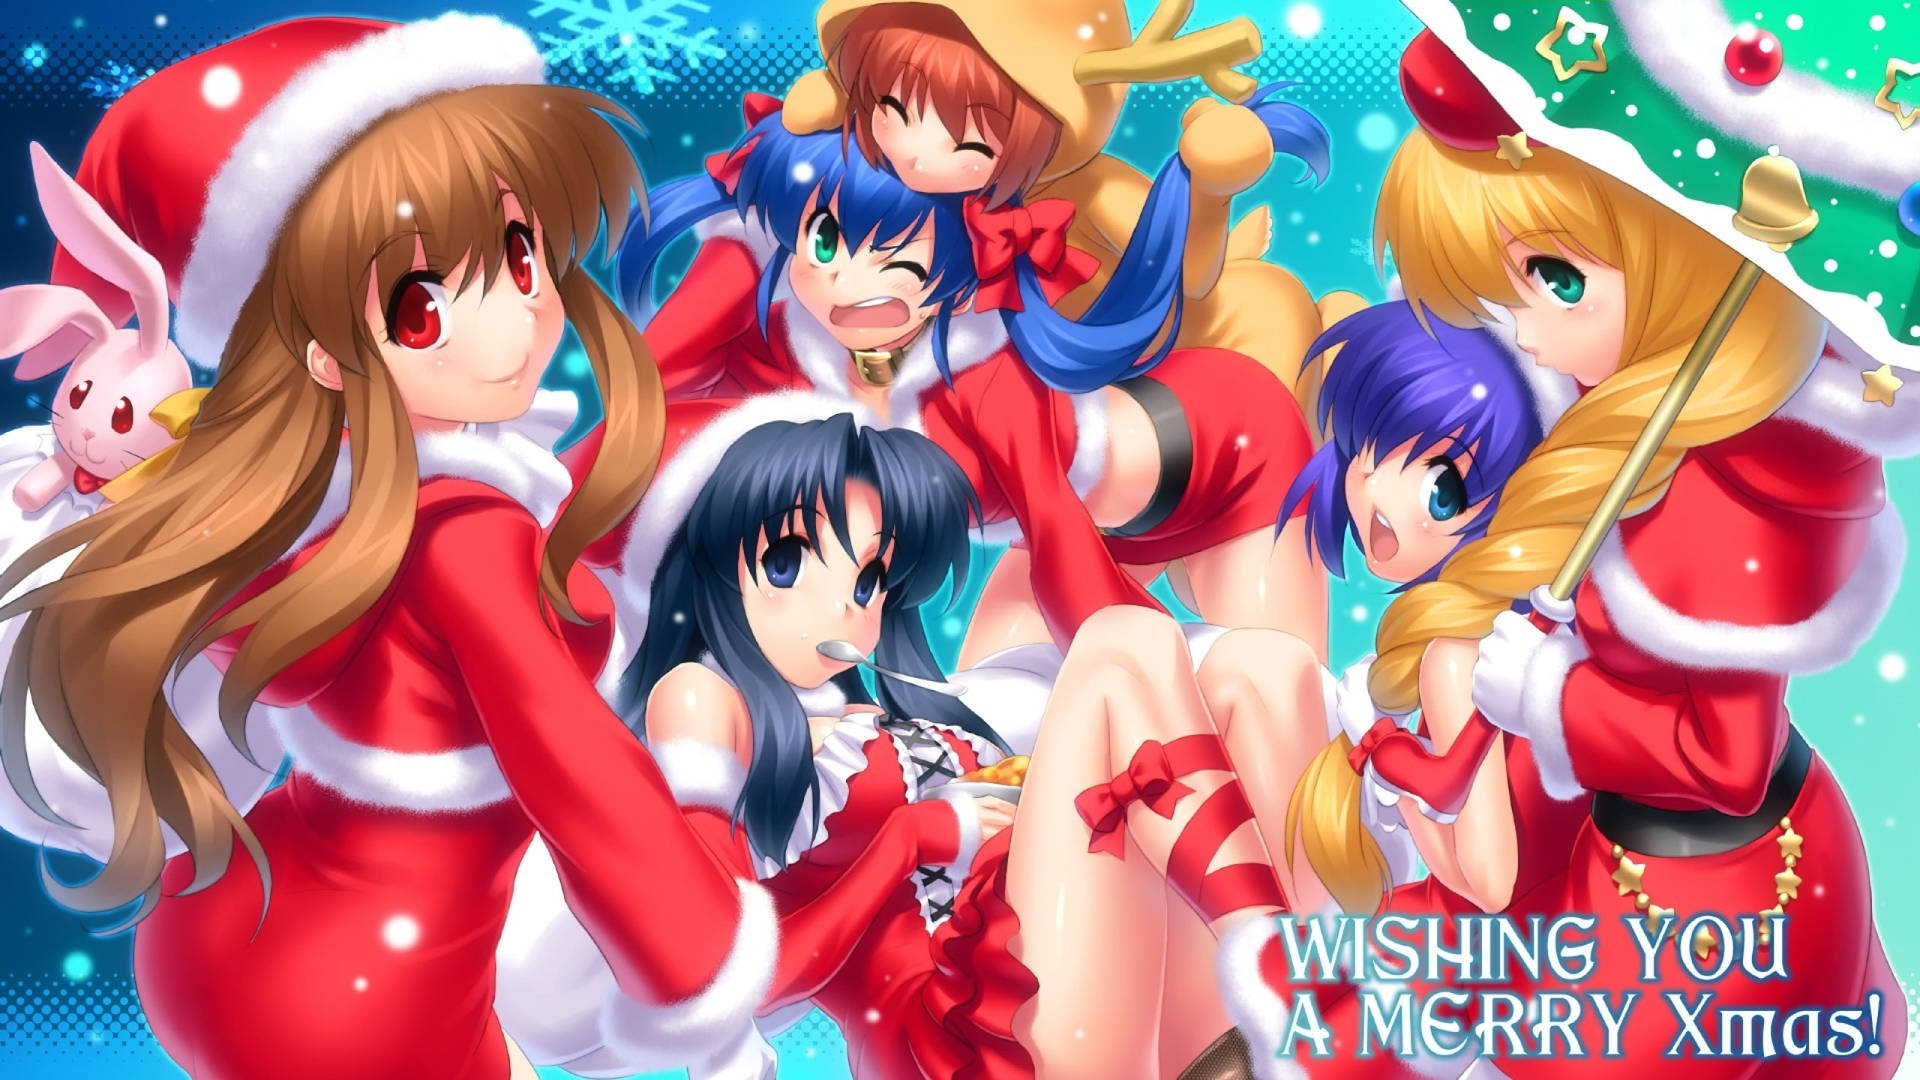 Girl Group Anime Christmas